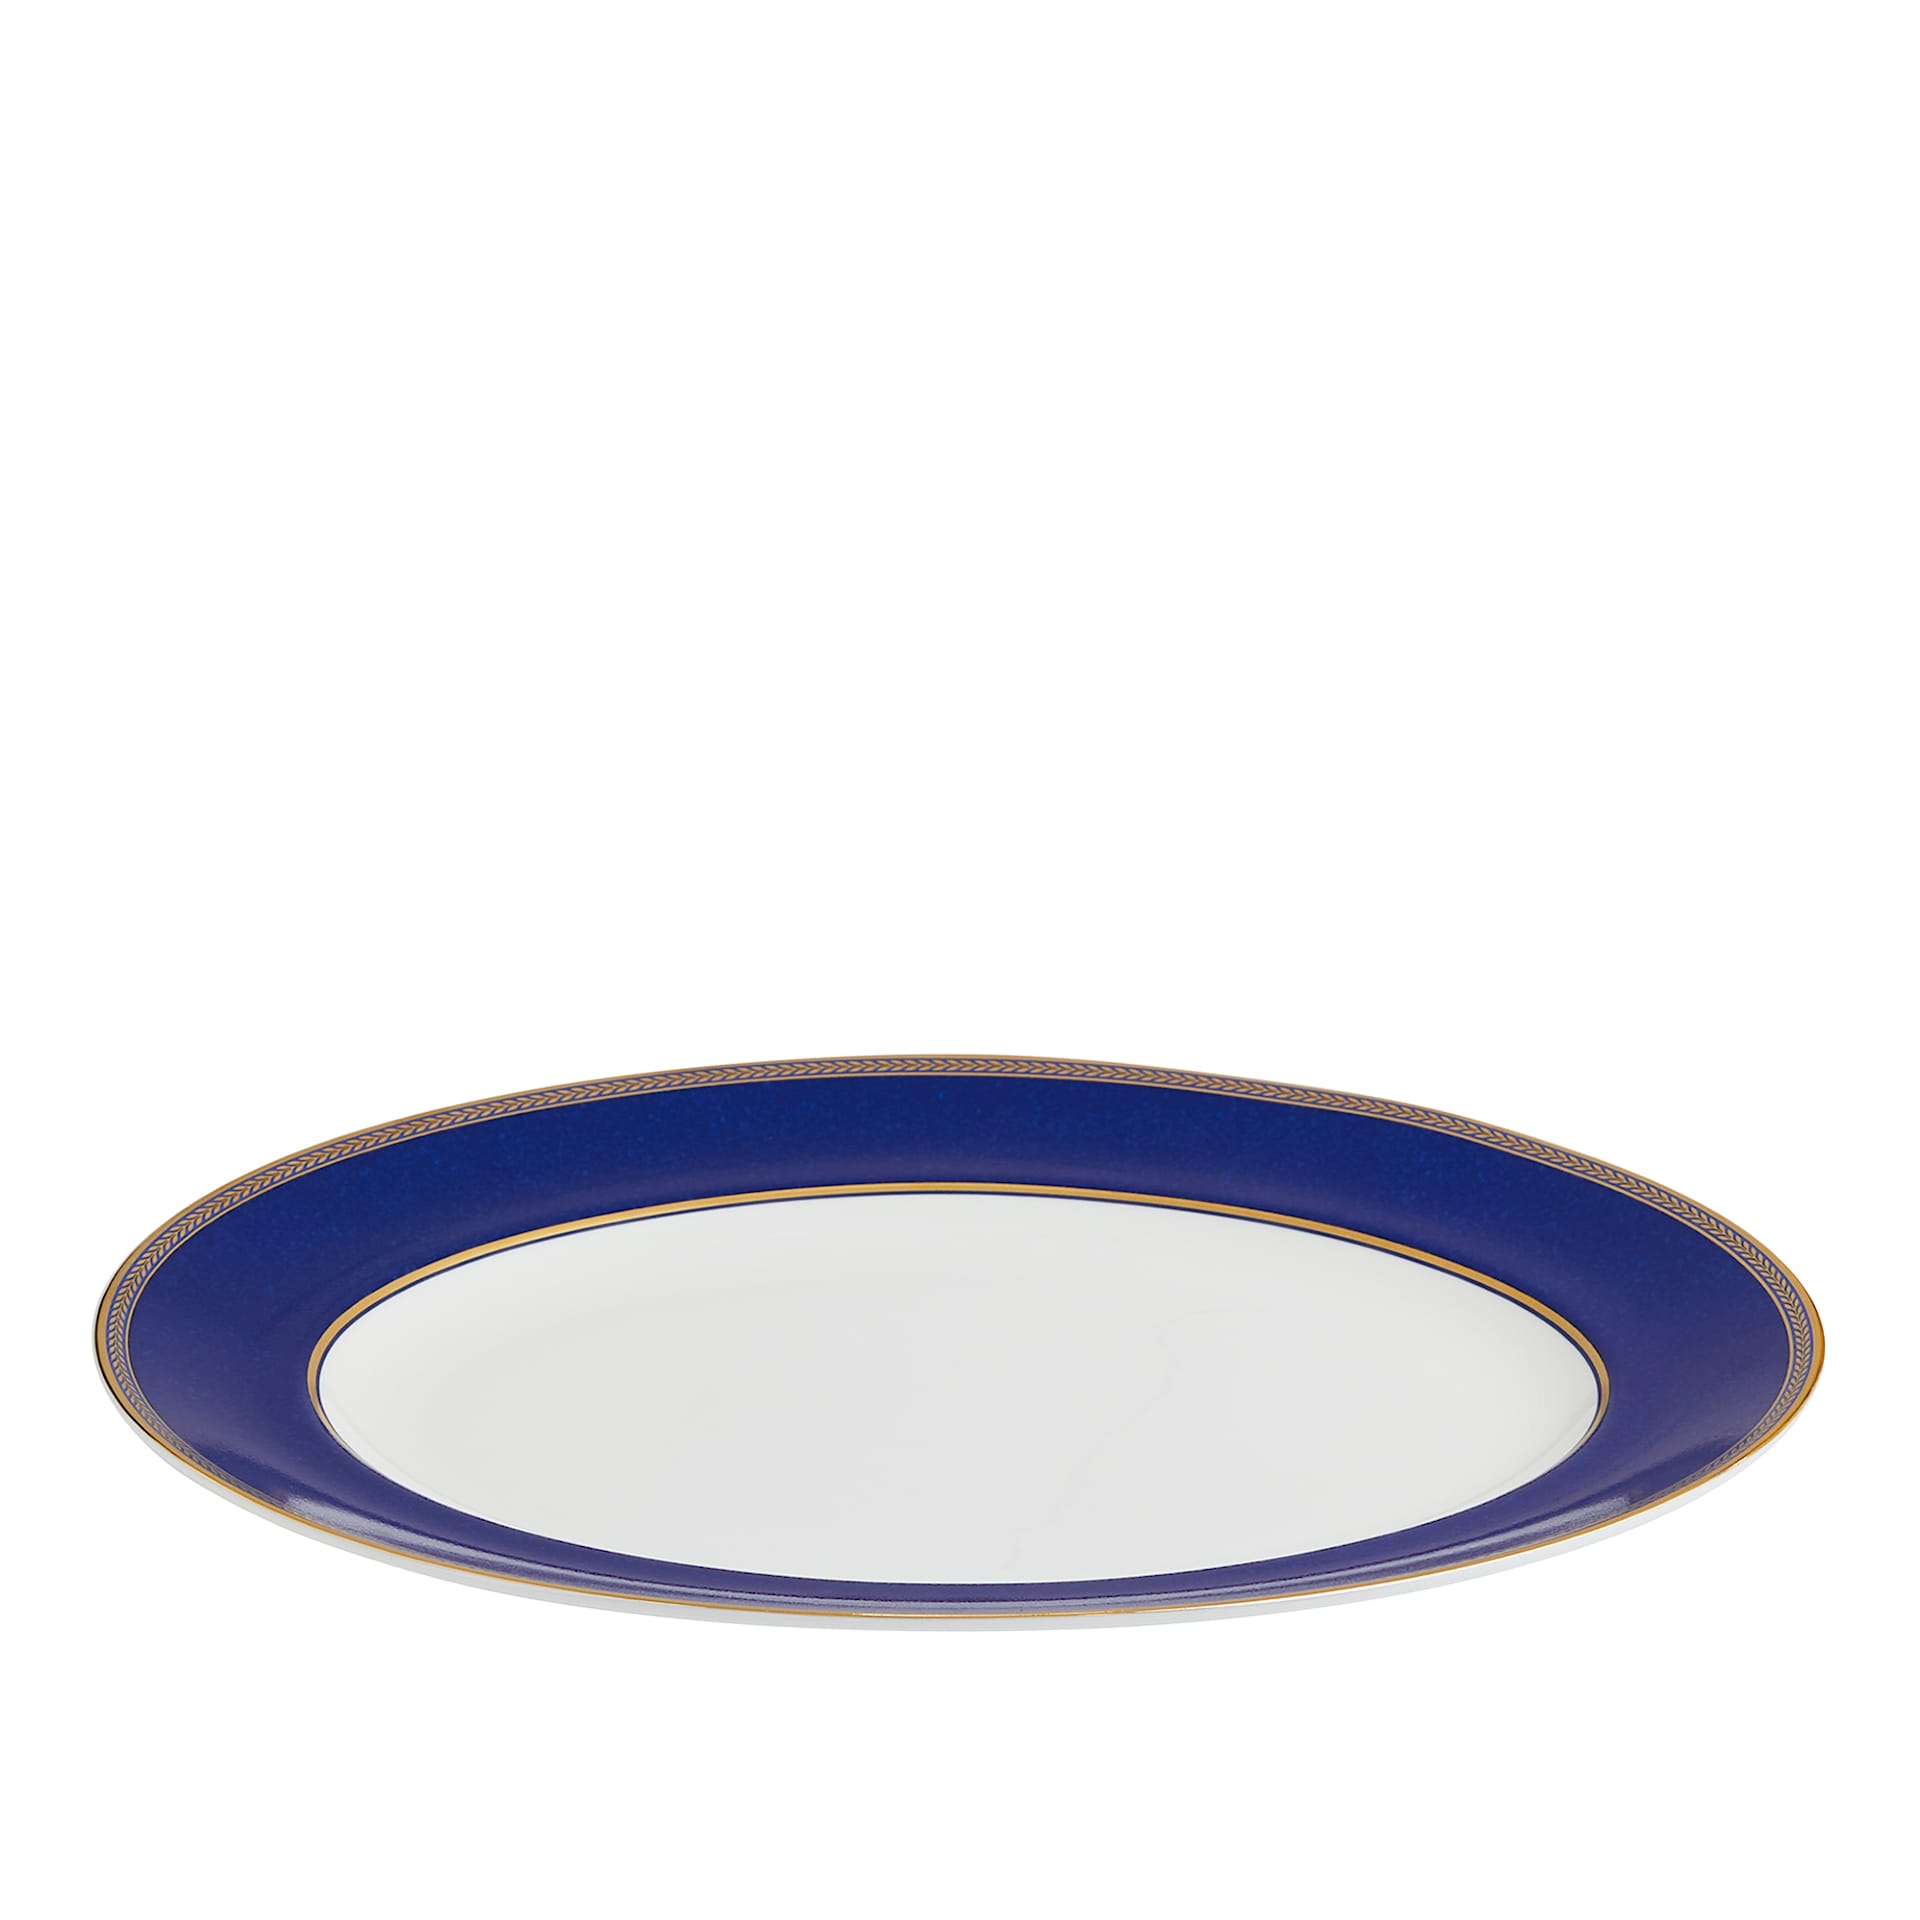 Renaissance Gold Oval Dish - Wedgwood - NO GA